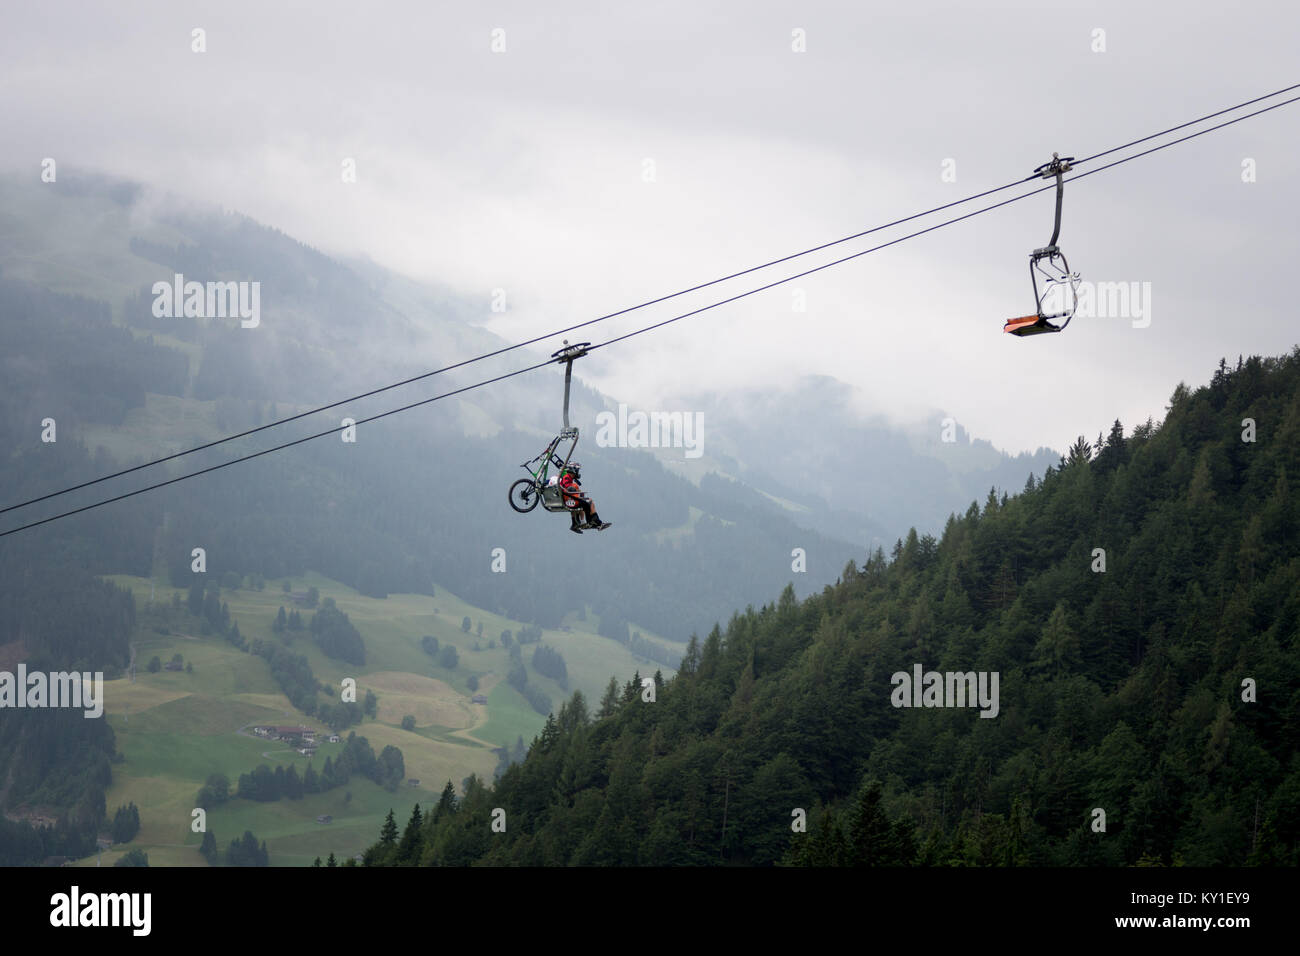 Die Landschaft ist beeindruckend in Kirchberg, Tirol, wo das heutige Rennen fand der spezialisierten - SRAM Enduro Serie in Österreich. Gonzales Foto/Christoph Oberschneider. Stockfoto